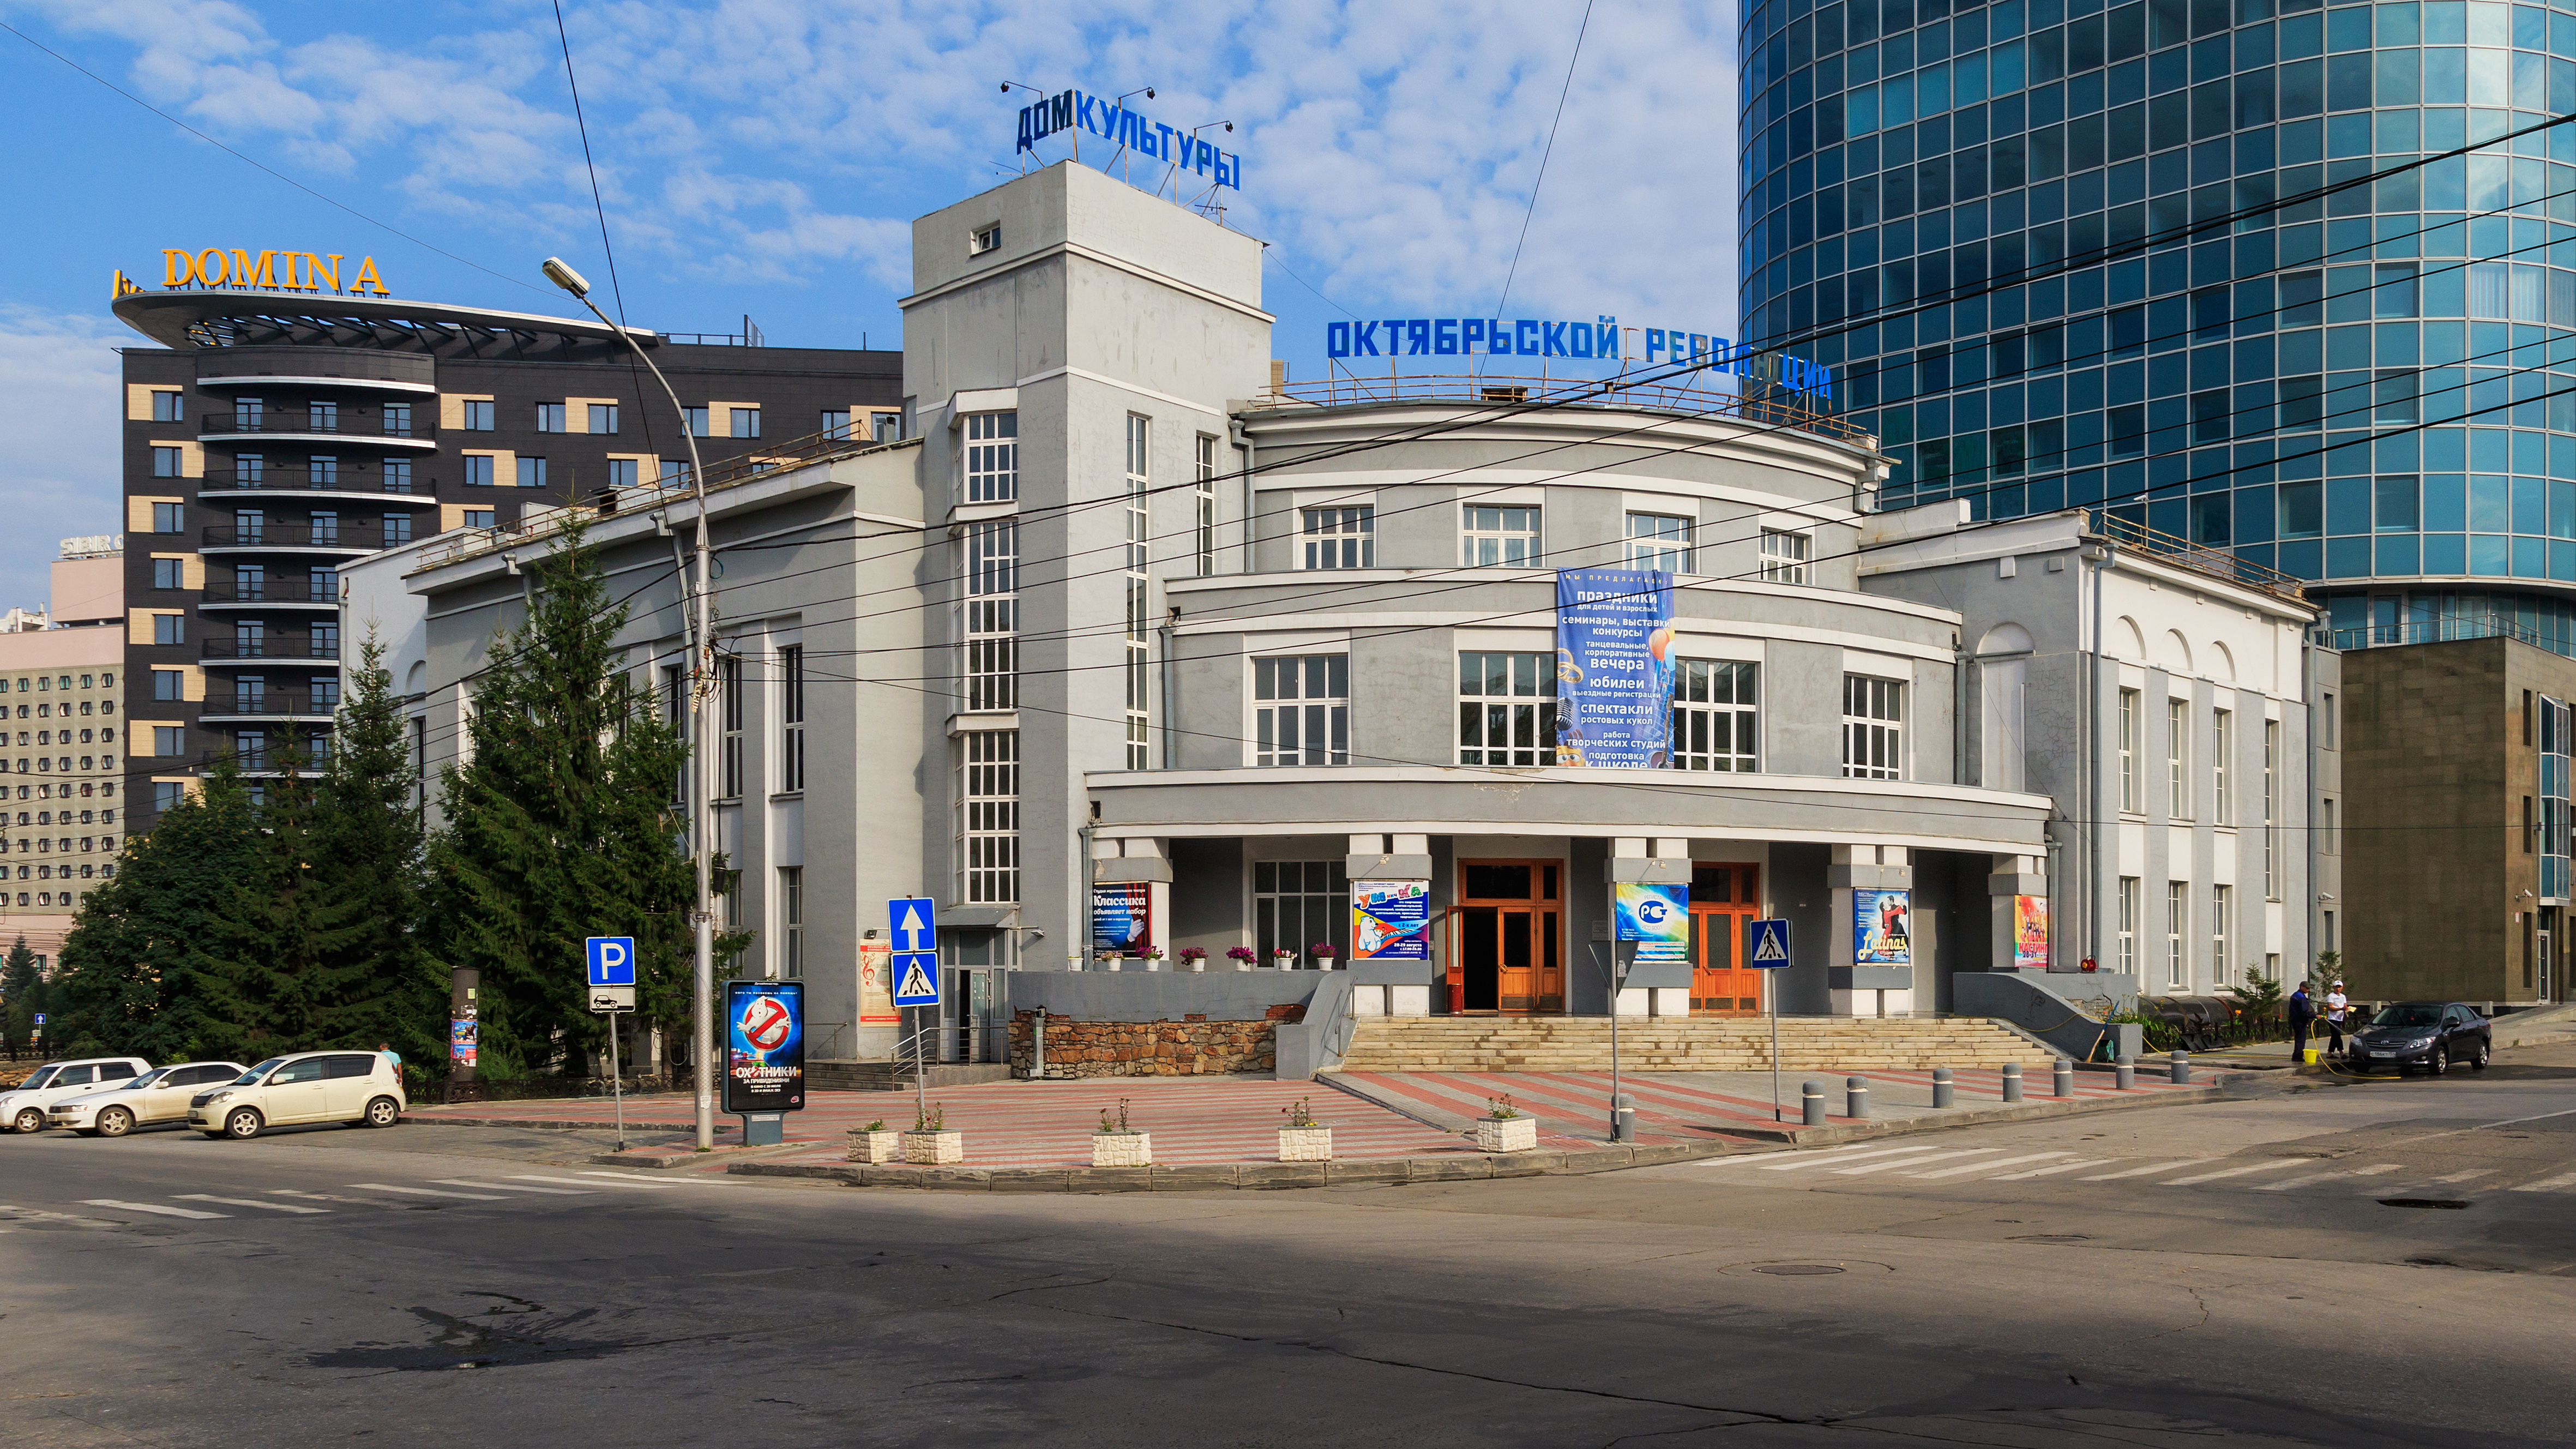 Novosibirsk LeninaSt DK Revolyutsii 07-2016